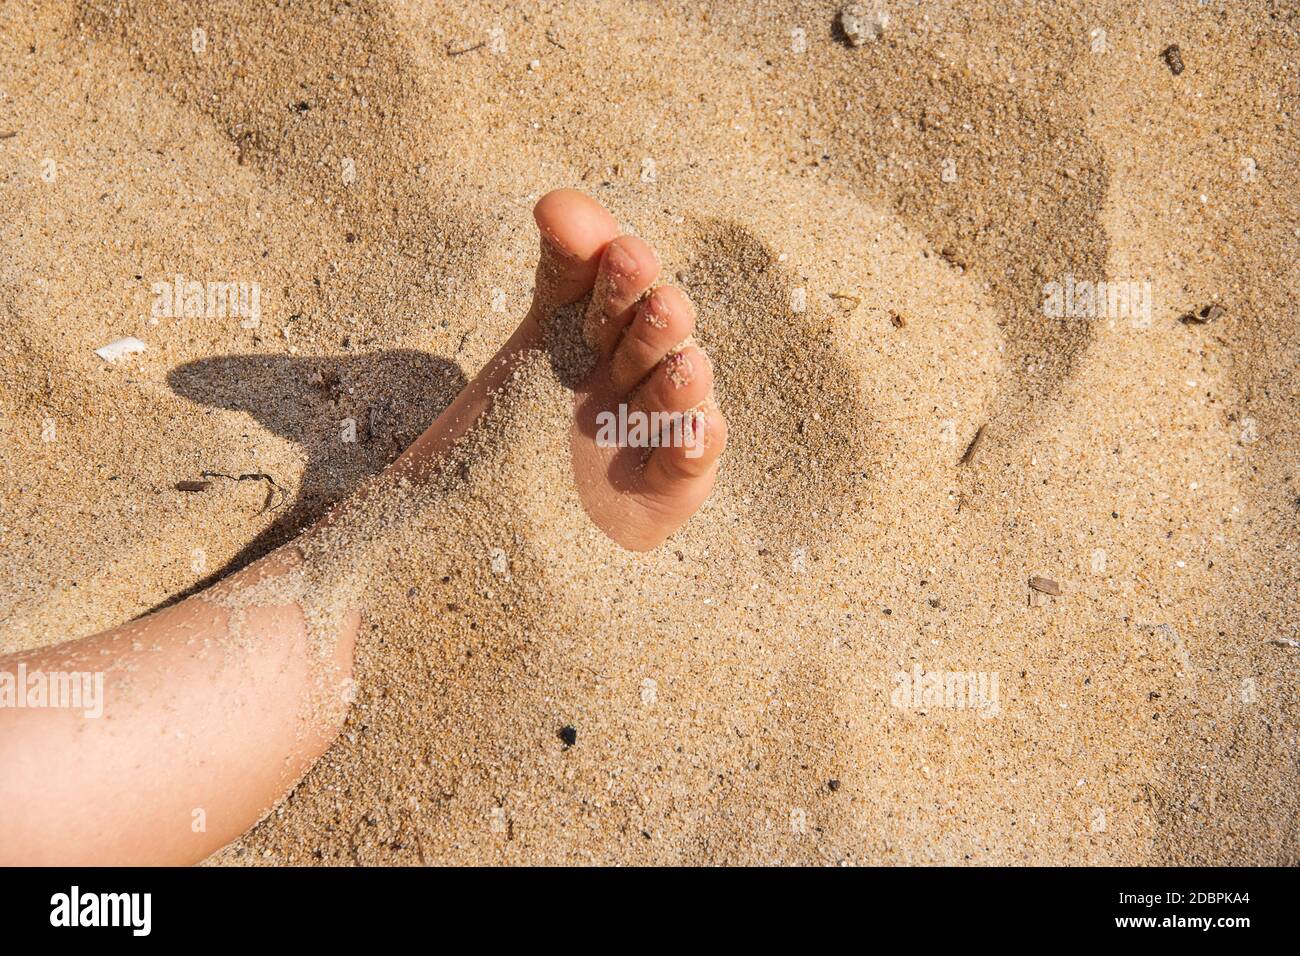 Fuß im Sand. Kind menschlichen nackten Füßen in der Meeresfotografie begraben. Zehe versteckt im Sand. Mädchen spielt am Strand und versteckt sie barfuß. J Stockfoto